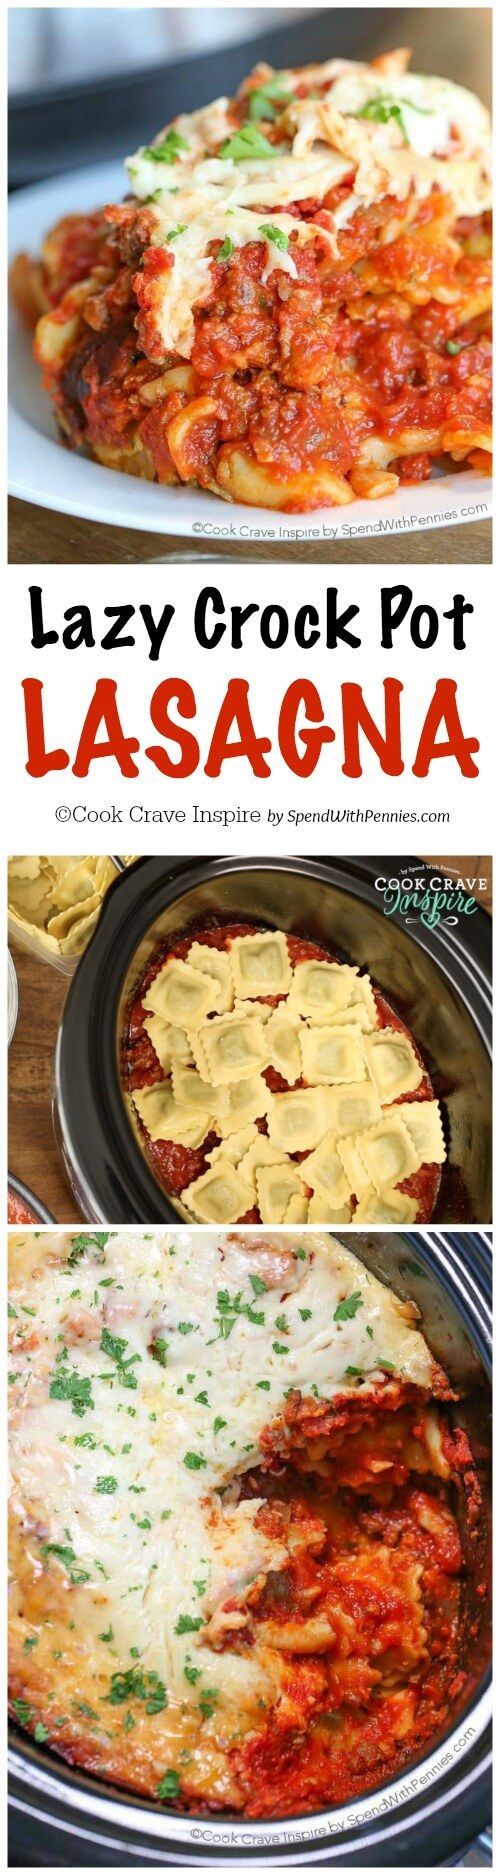 Lazy Crock Pot Lasagna